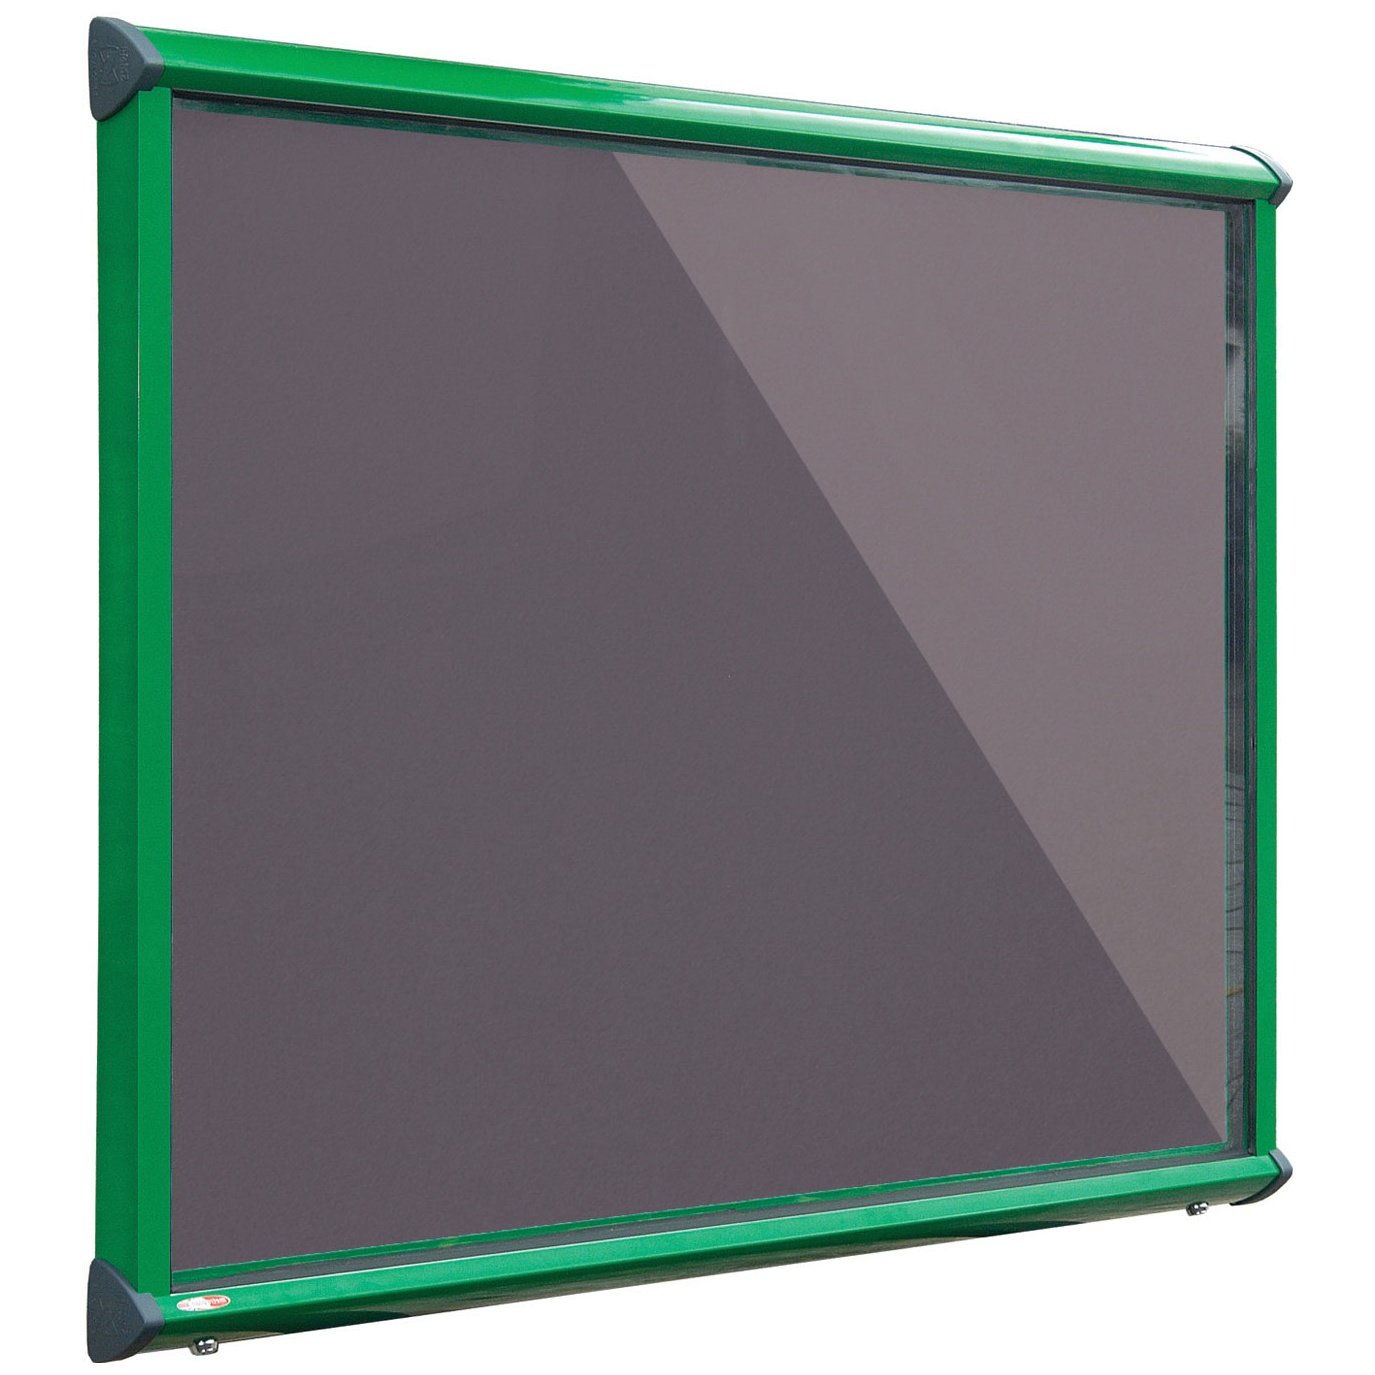 Coloured Frame Exterior Shield Showcases